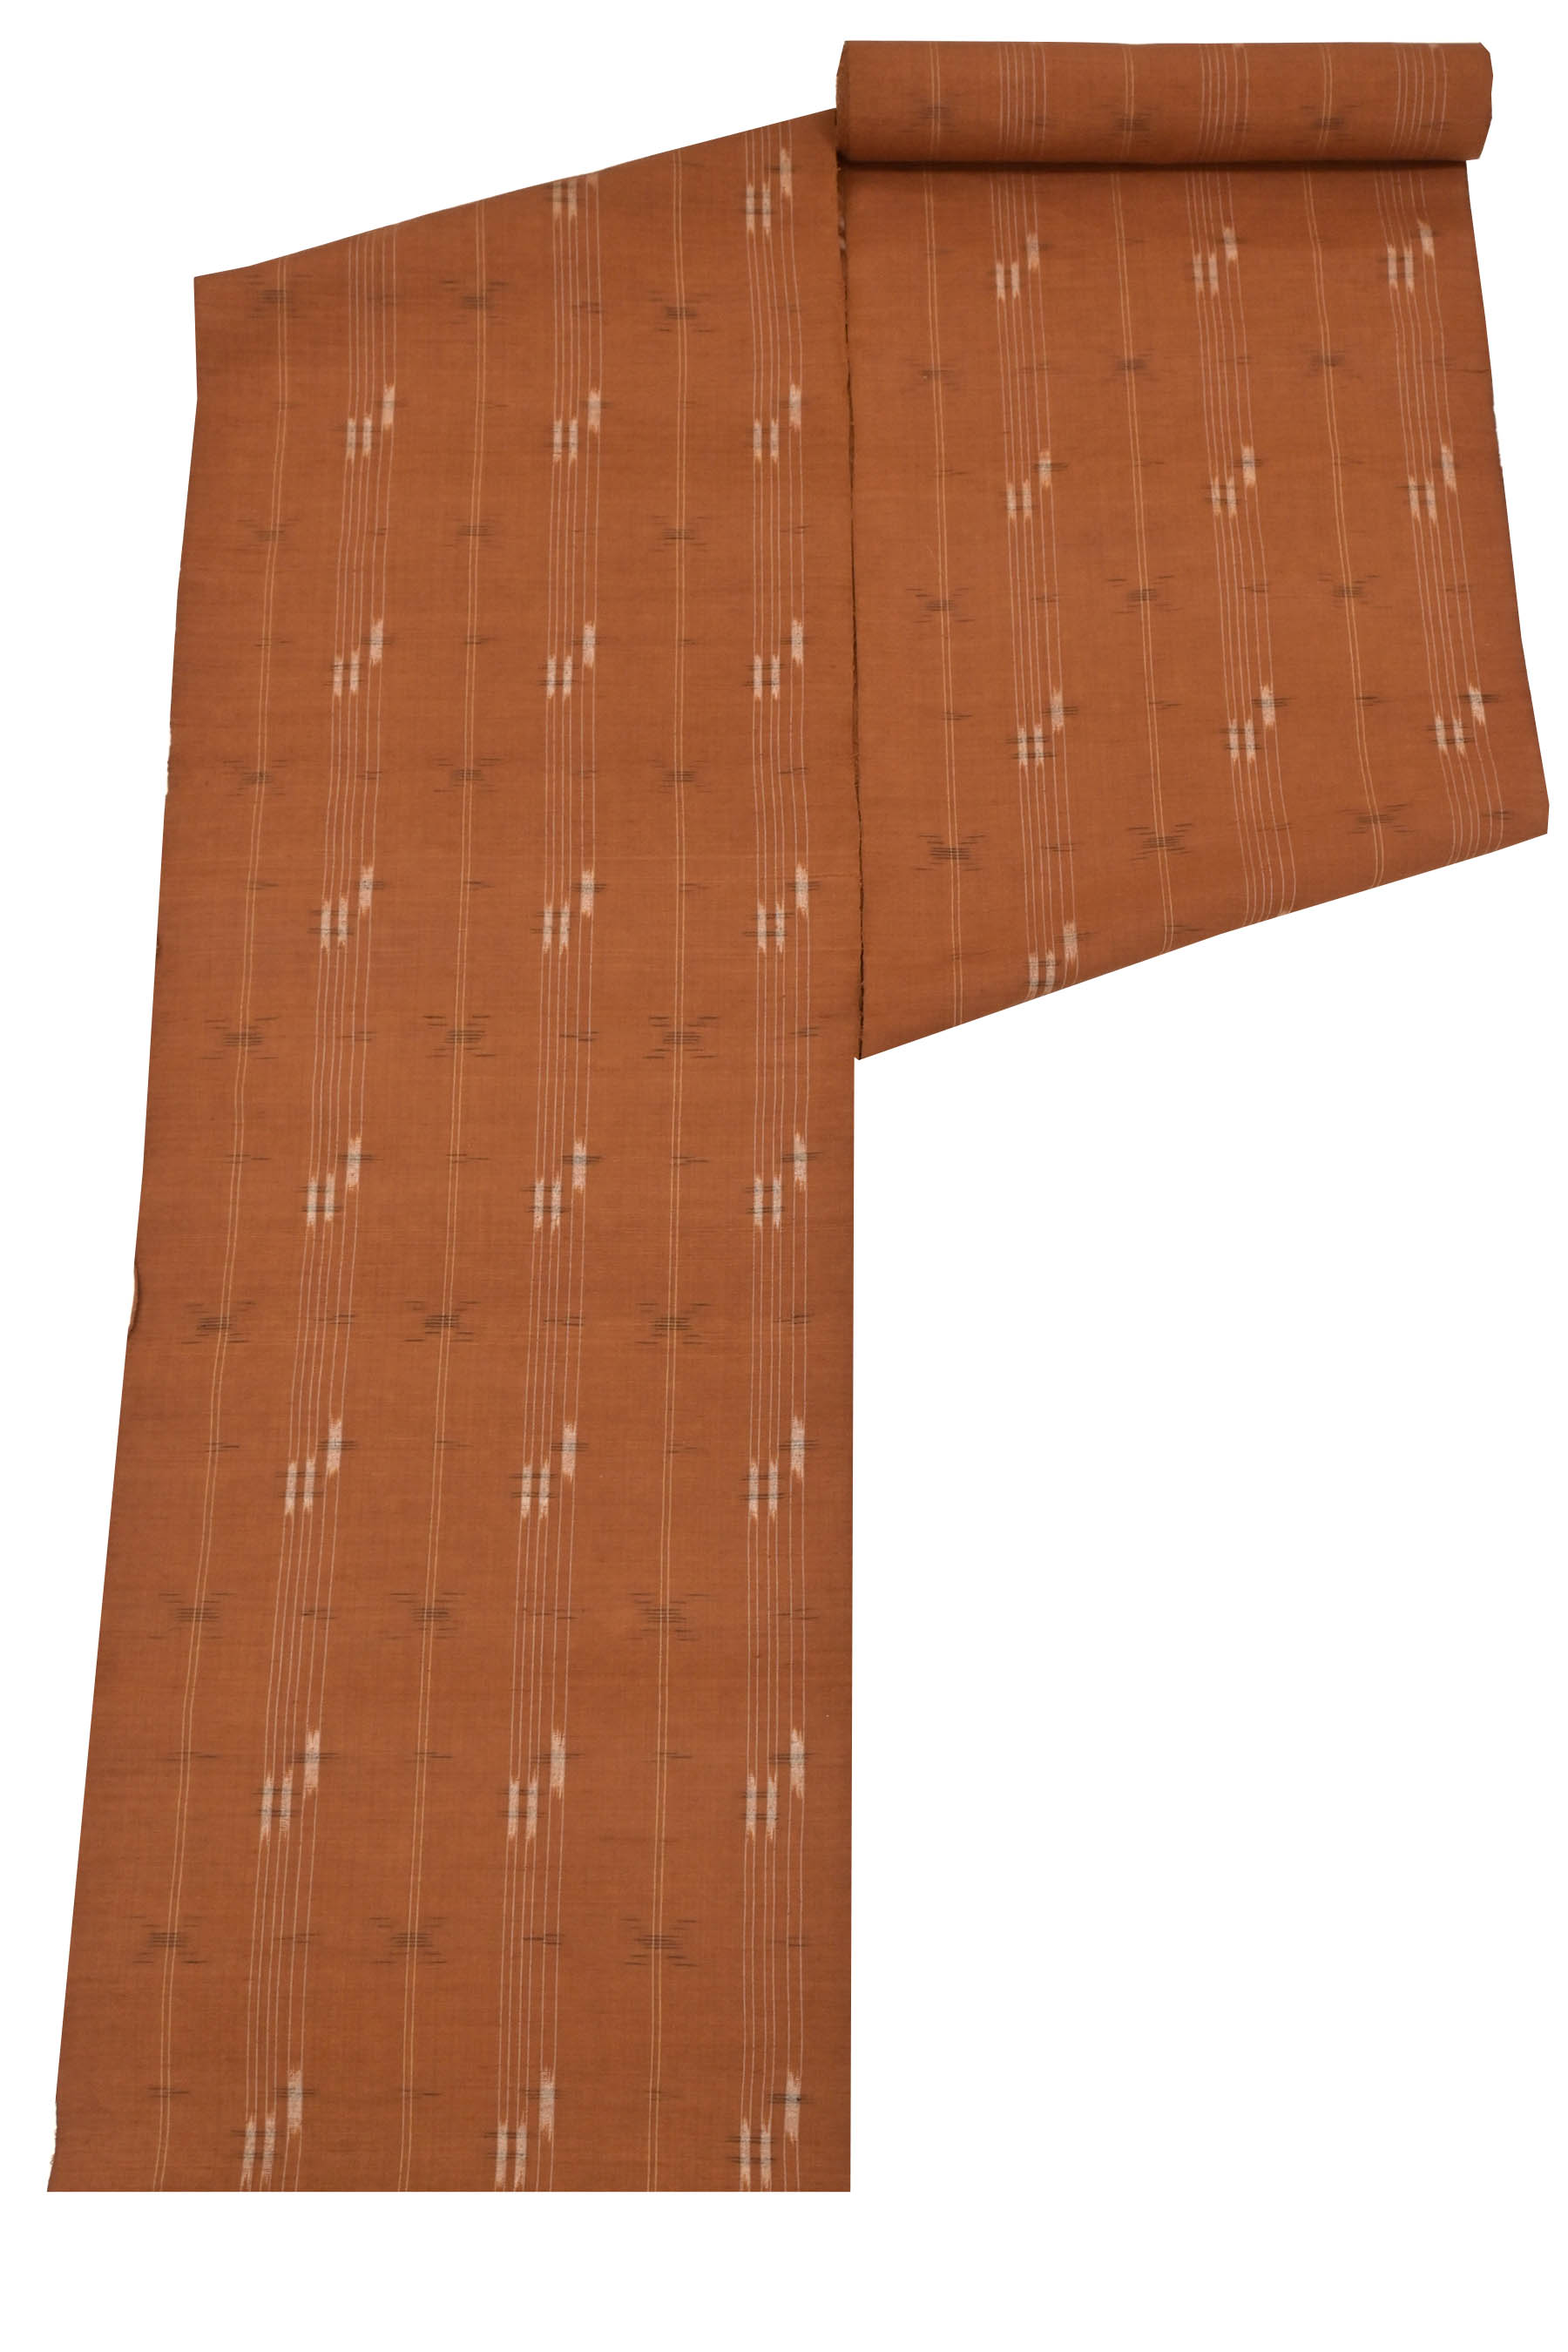 【本場久米島紬】特選手織り草木染紬着尺伝統的工芸品「バンジョウ」シンプルな一枚。どんどん希少に、どんどんお値段上がっております！